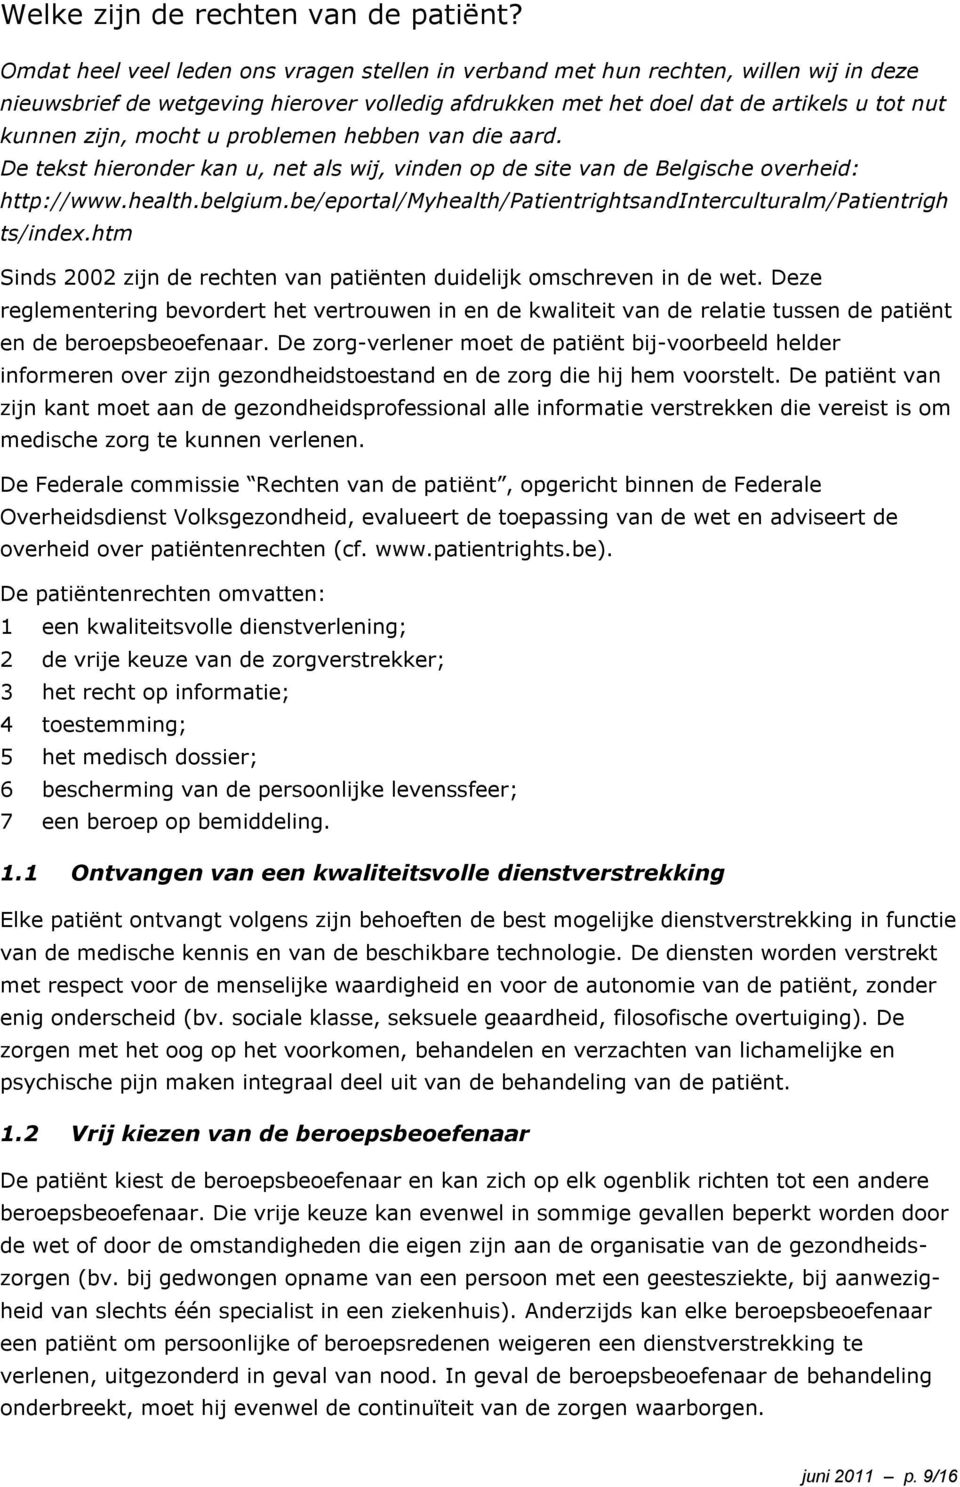 u problemen hebben van die aard. De tekst hieronder kan u, net als wij, vinden op de site van de Belgische overheid: http://www.health.belgium.